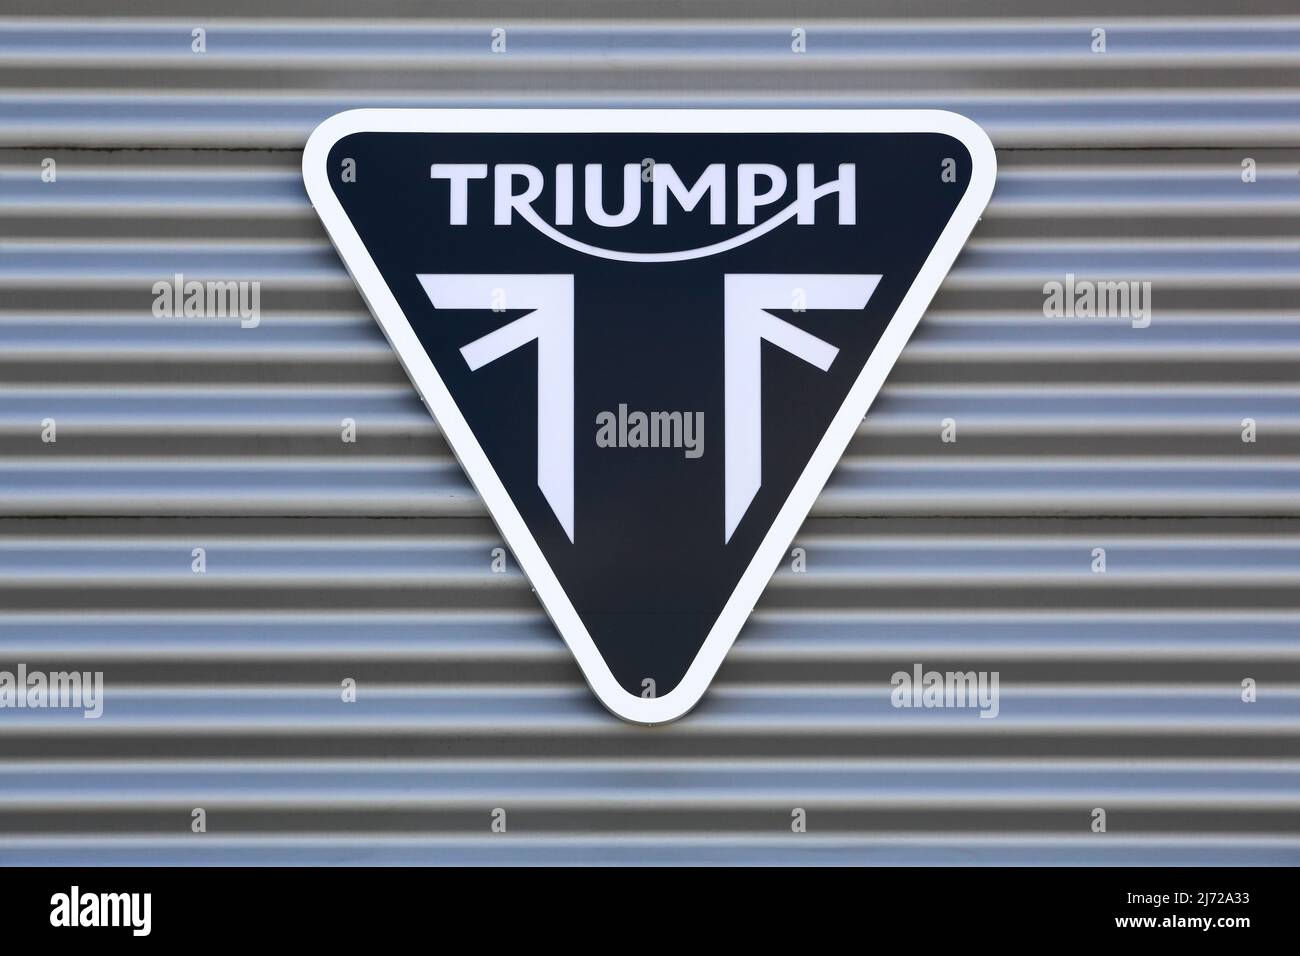 Dardilly, Frankreich - 6. September 2020: Triumph-Logo an einer Wand. Triumph Motorcycles ist der größte britische Motorradhersteller Stockfoto